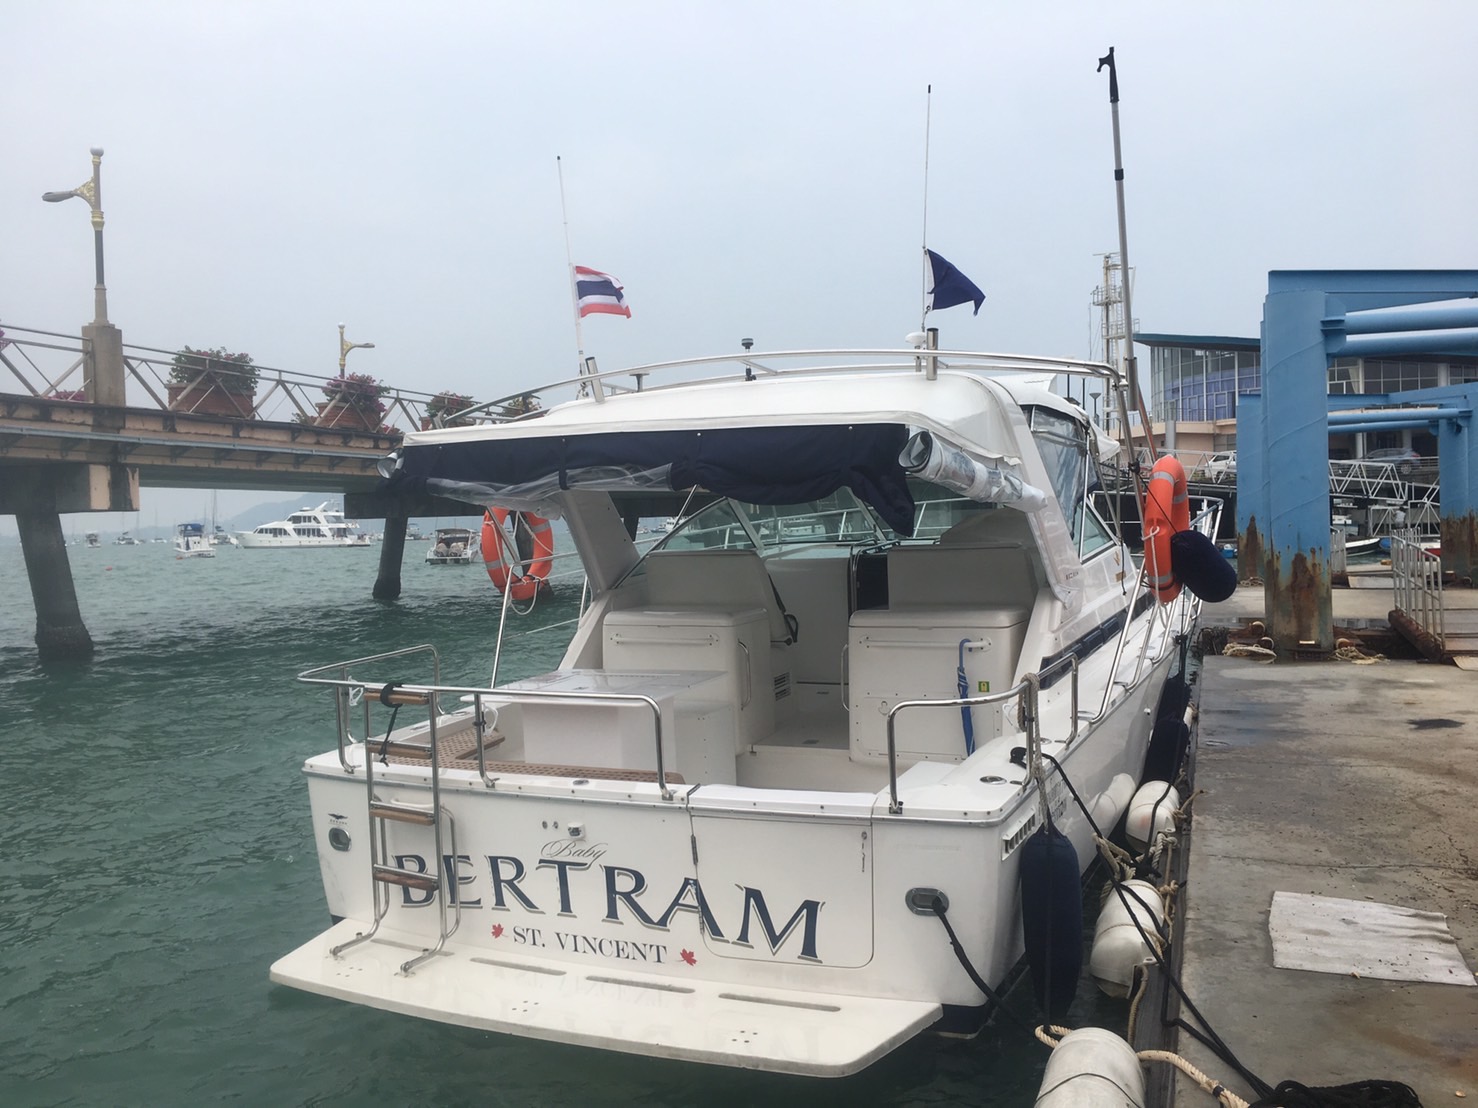 ใฺห้เช่าเรือ Bertram Motor Yacht Private Tour Phuket ล่องเรือมอตอร์ยอร์ทเที่ยวเกาะภูเก็ต  เช่น เกาะเฮ เกาะราชา เกาะไม้ท่อน กับ บริษัท ภูเก็ต ออนเซล จำกัด มา1คน หรือมาเป็นแก๊ง ก็สามารถเที่ยวบนเรือได้ในราคา เบาๆ